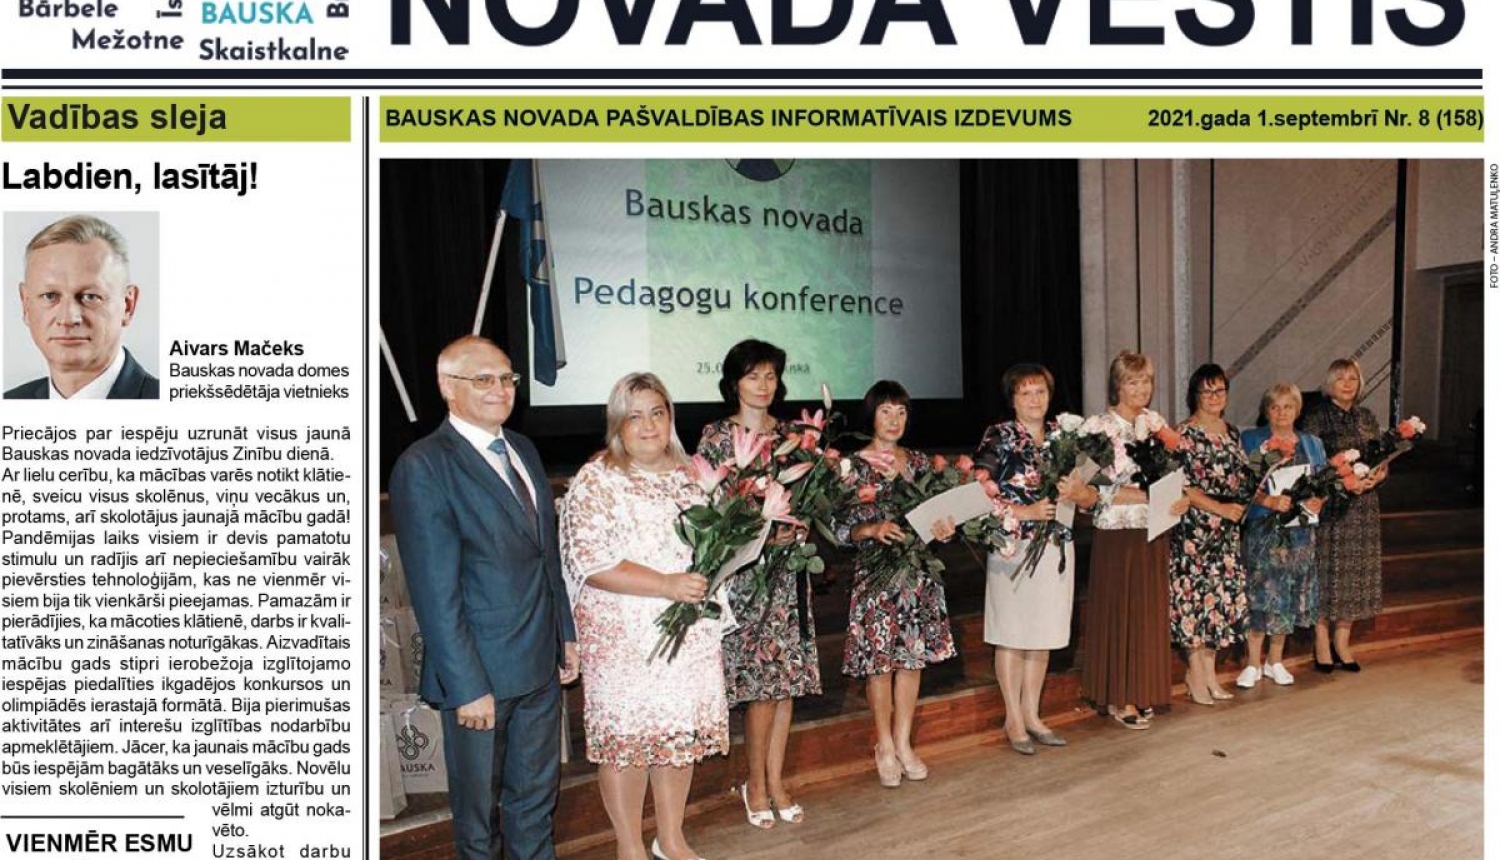 Jaunajā „Bauskas Novada Vēstis" numurā varat lasīt: